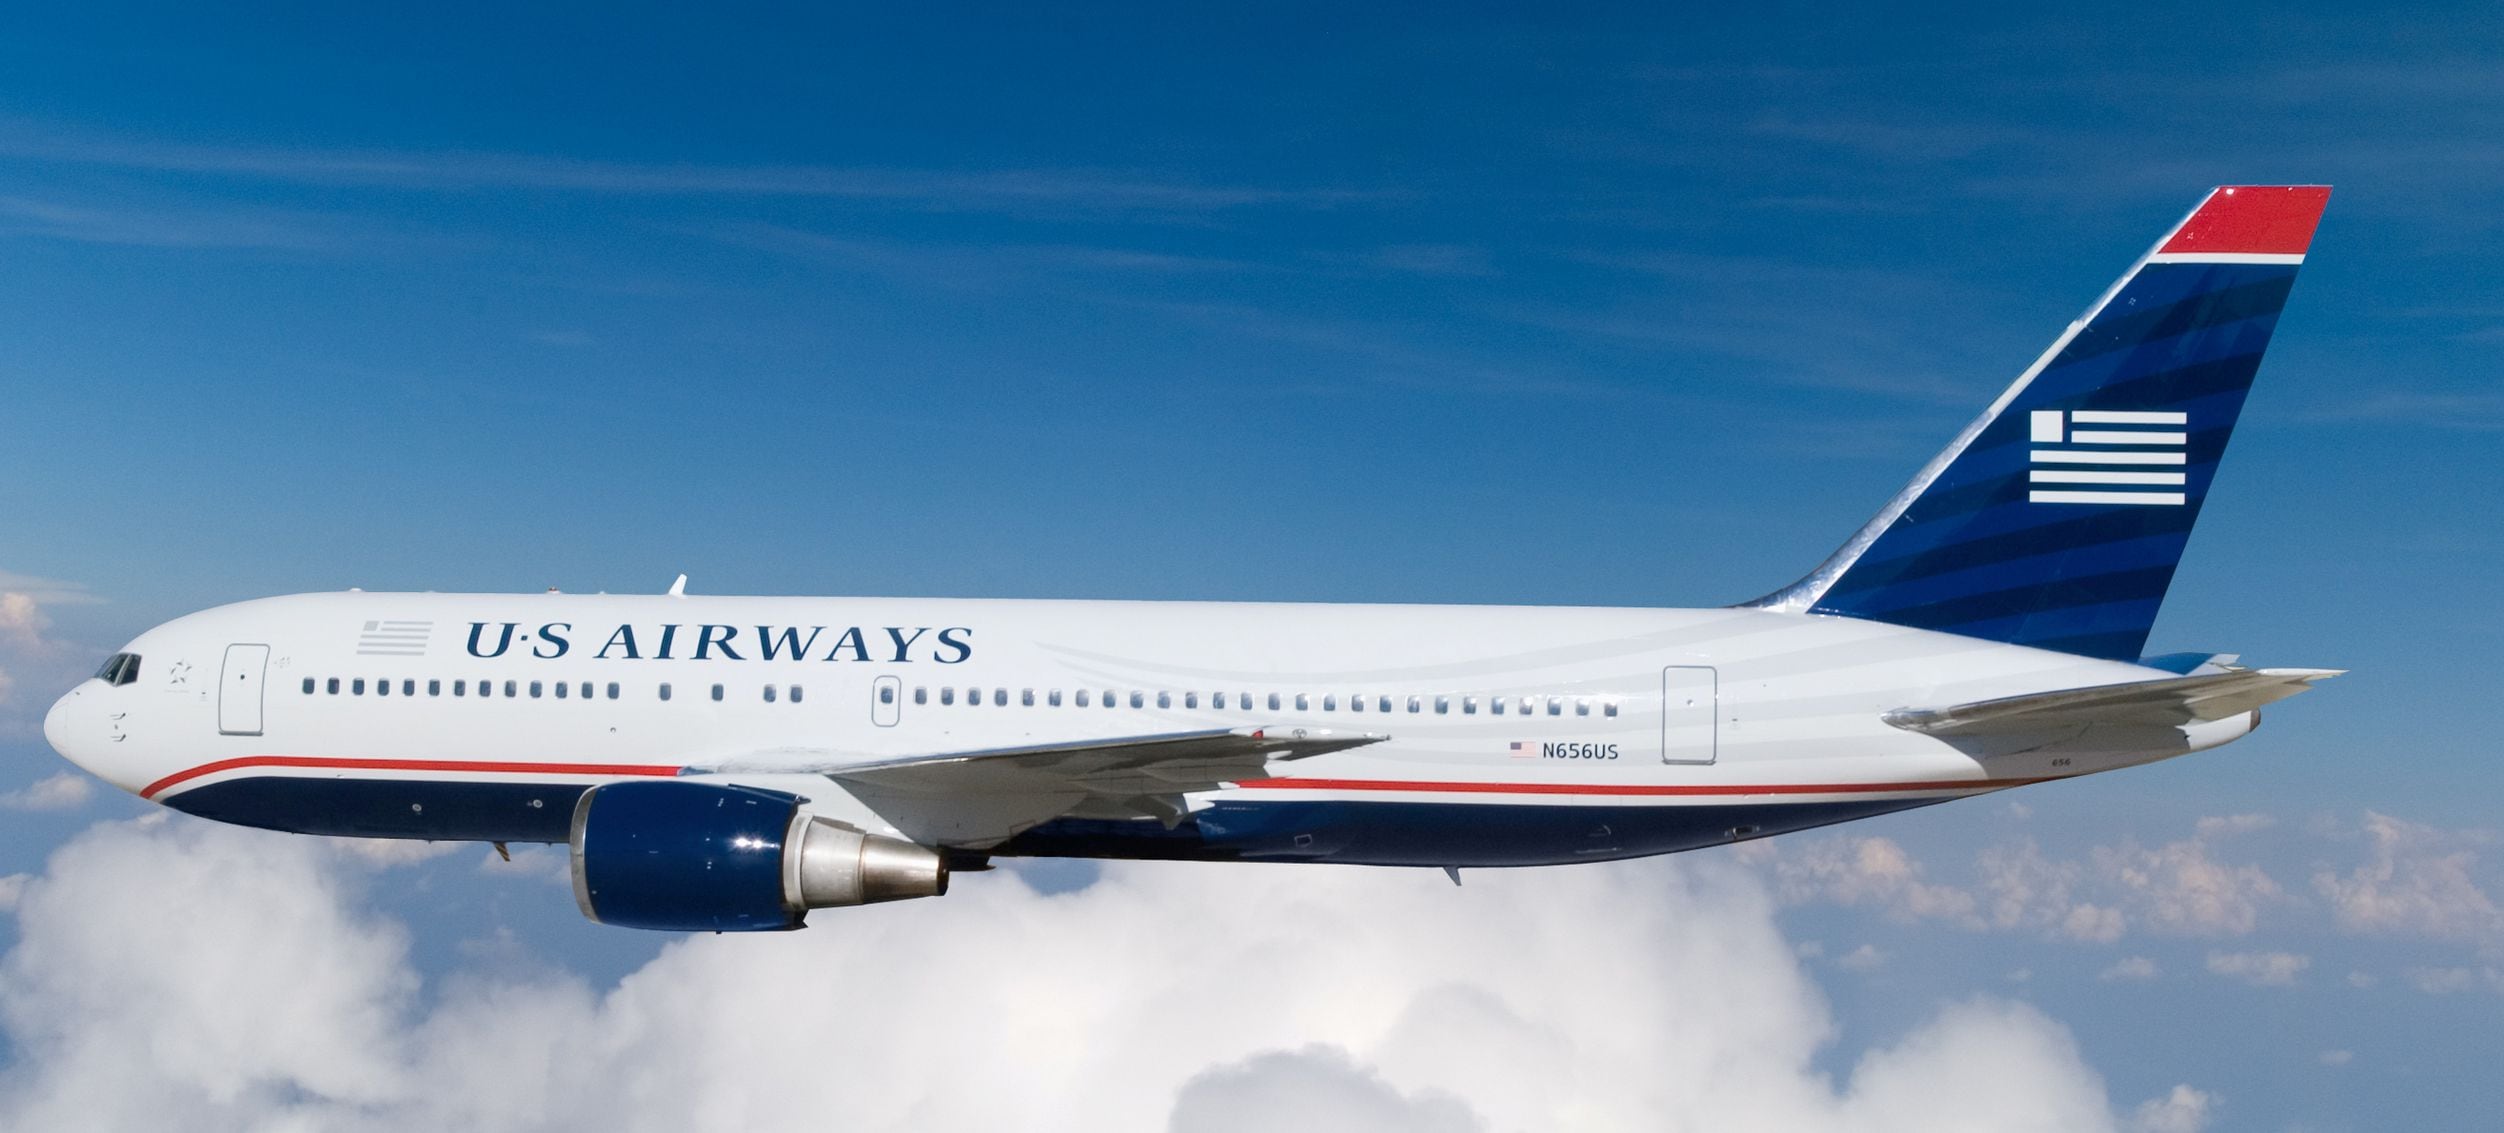 Boeing 767-200 leaves US Airways fleet